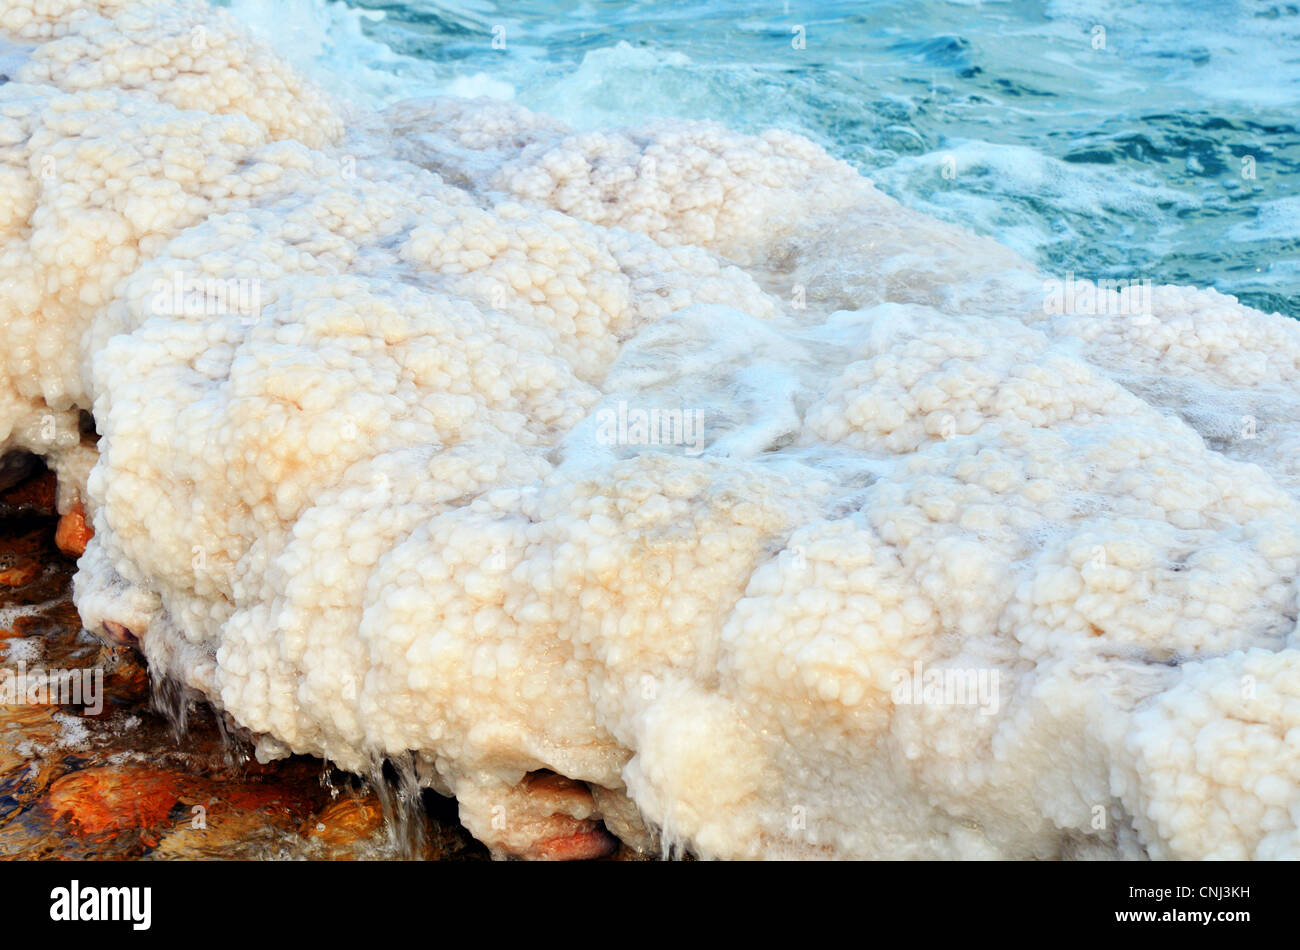 Formations de sel dans la mer Morte d'Israël près de la ville d'Ein Gedi. Banque D'Images